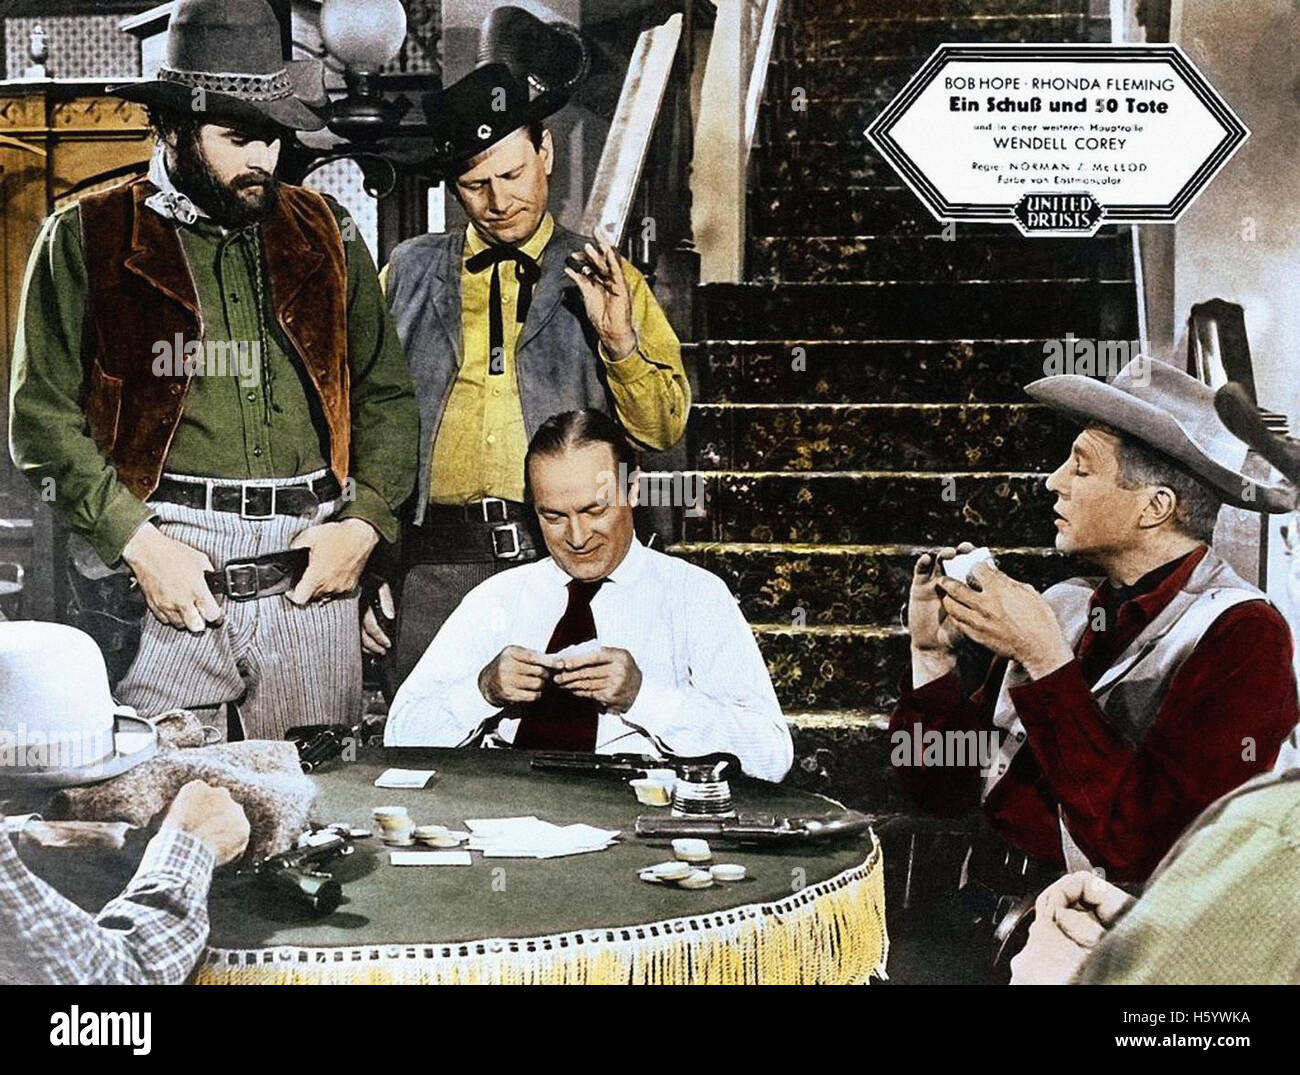 Alias Jesse James - Movie Poster Stock Photo